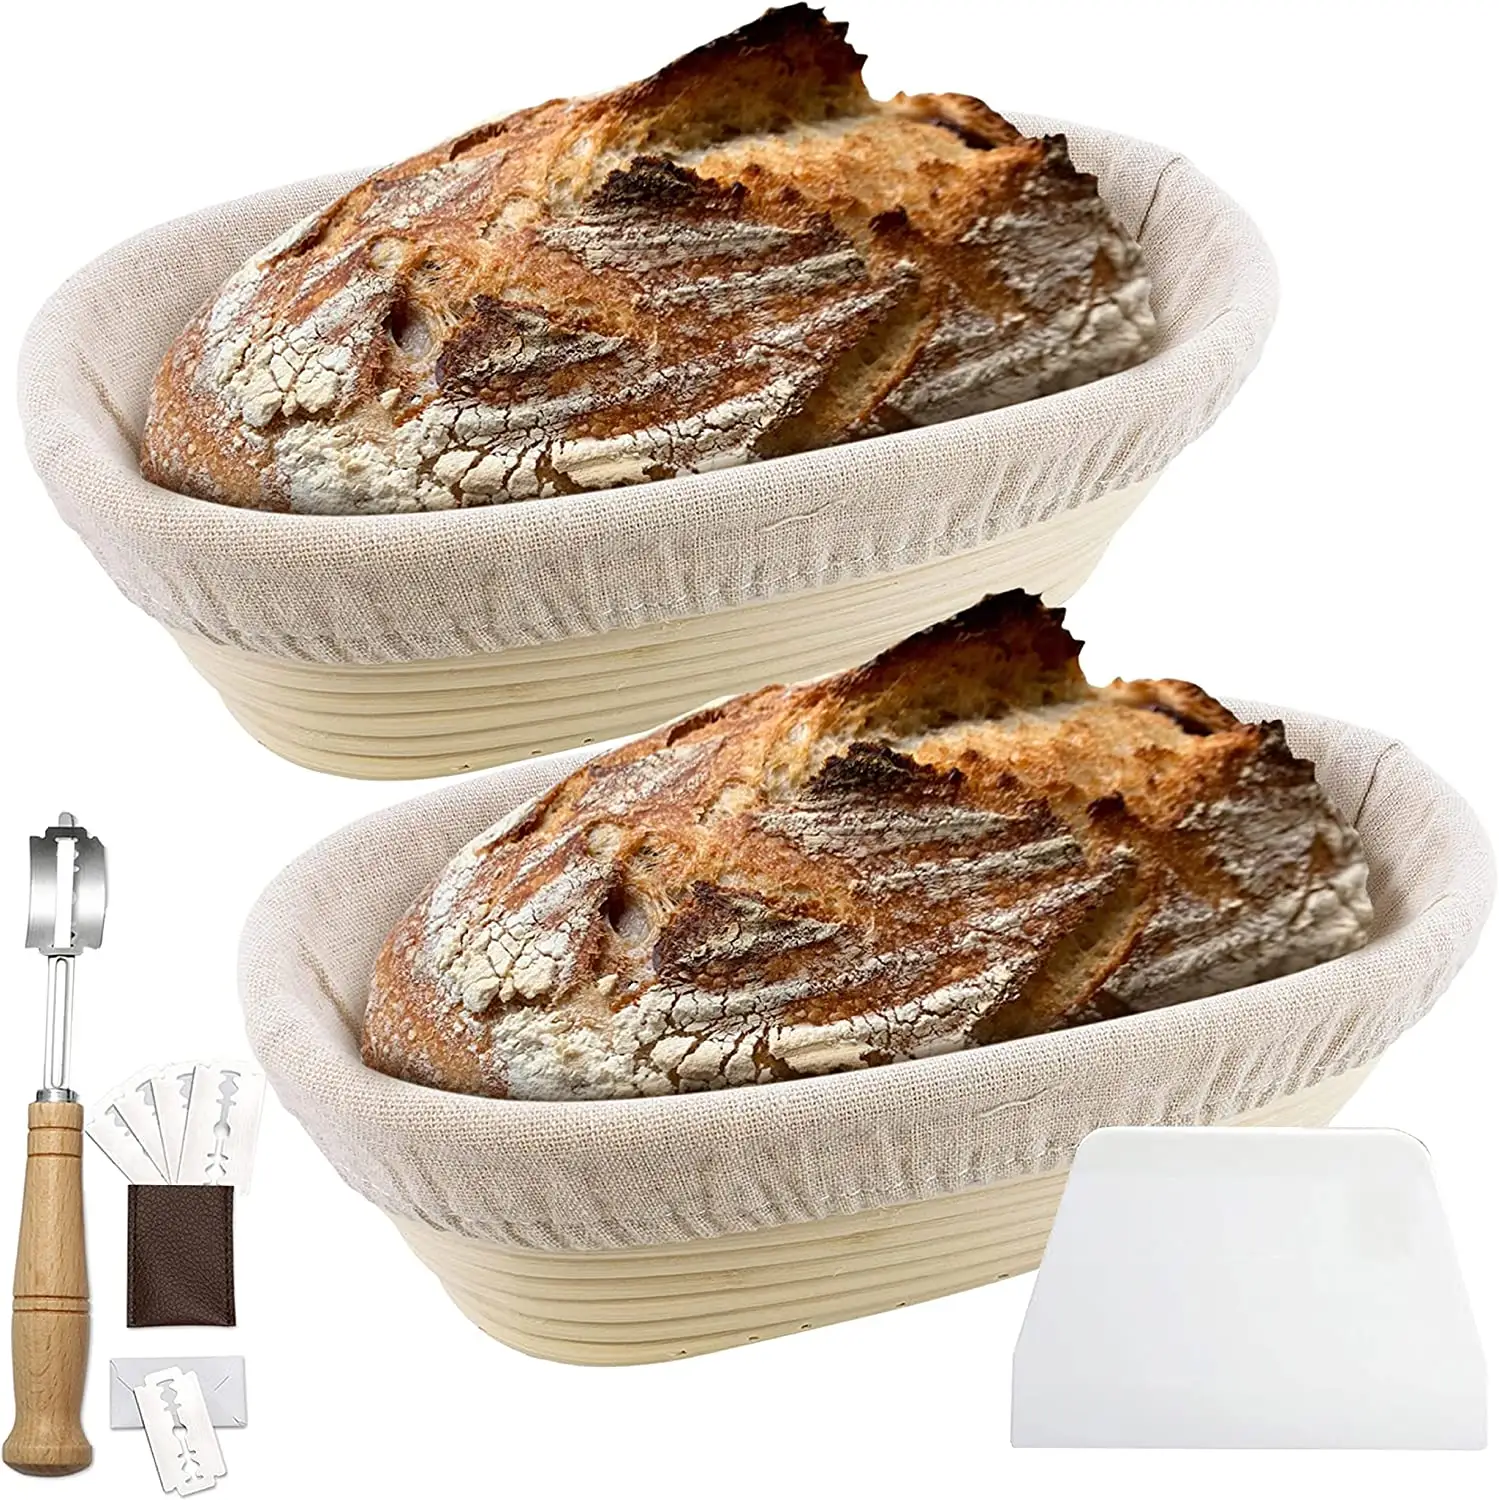 Giỏ Đựng Bánh Mì Hình Bầu Dục 11 Inch Kèm Vải Lót Dụng Cụ Cạo Và Cắt Bánh Mì Cao Cấp Bát Nướng Lý Tưởng Cho Bột Nhào